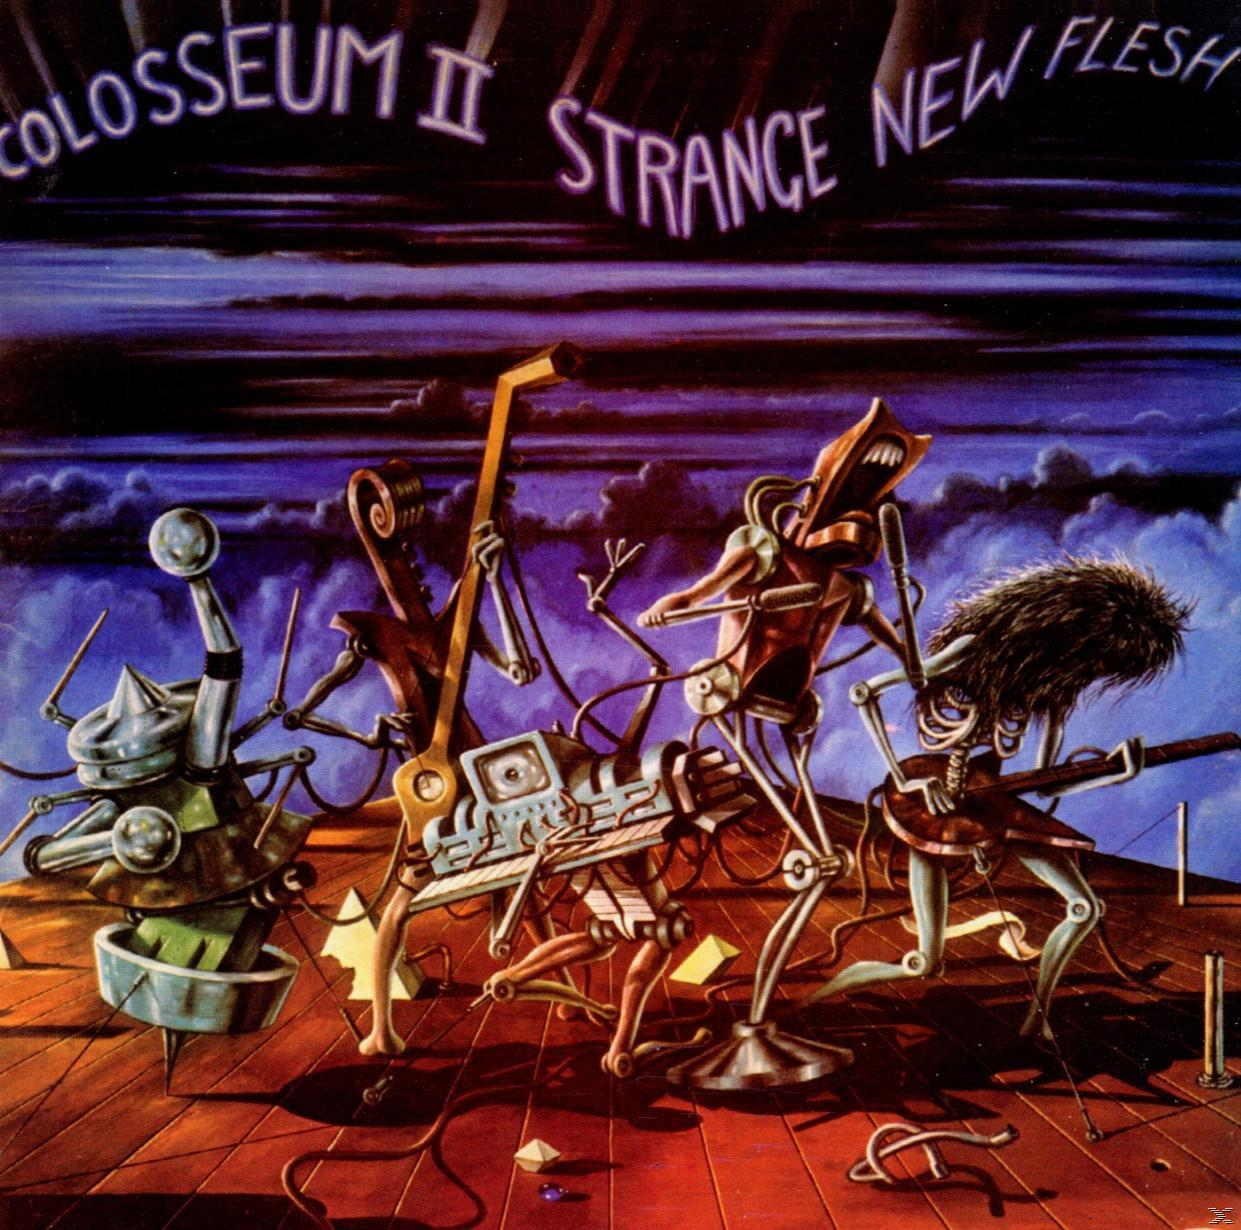 Colosseum Ii - Strange Flesh / Remastered+Expanded (CD) - New